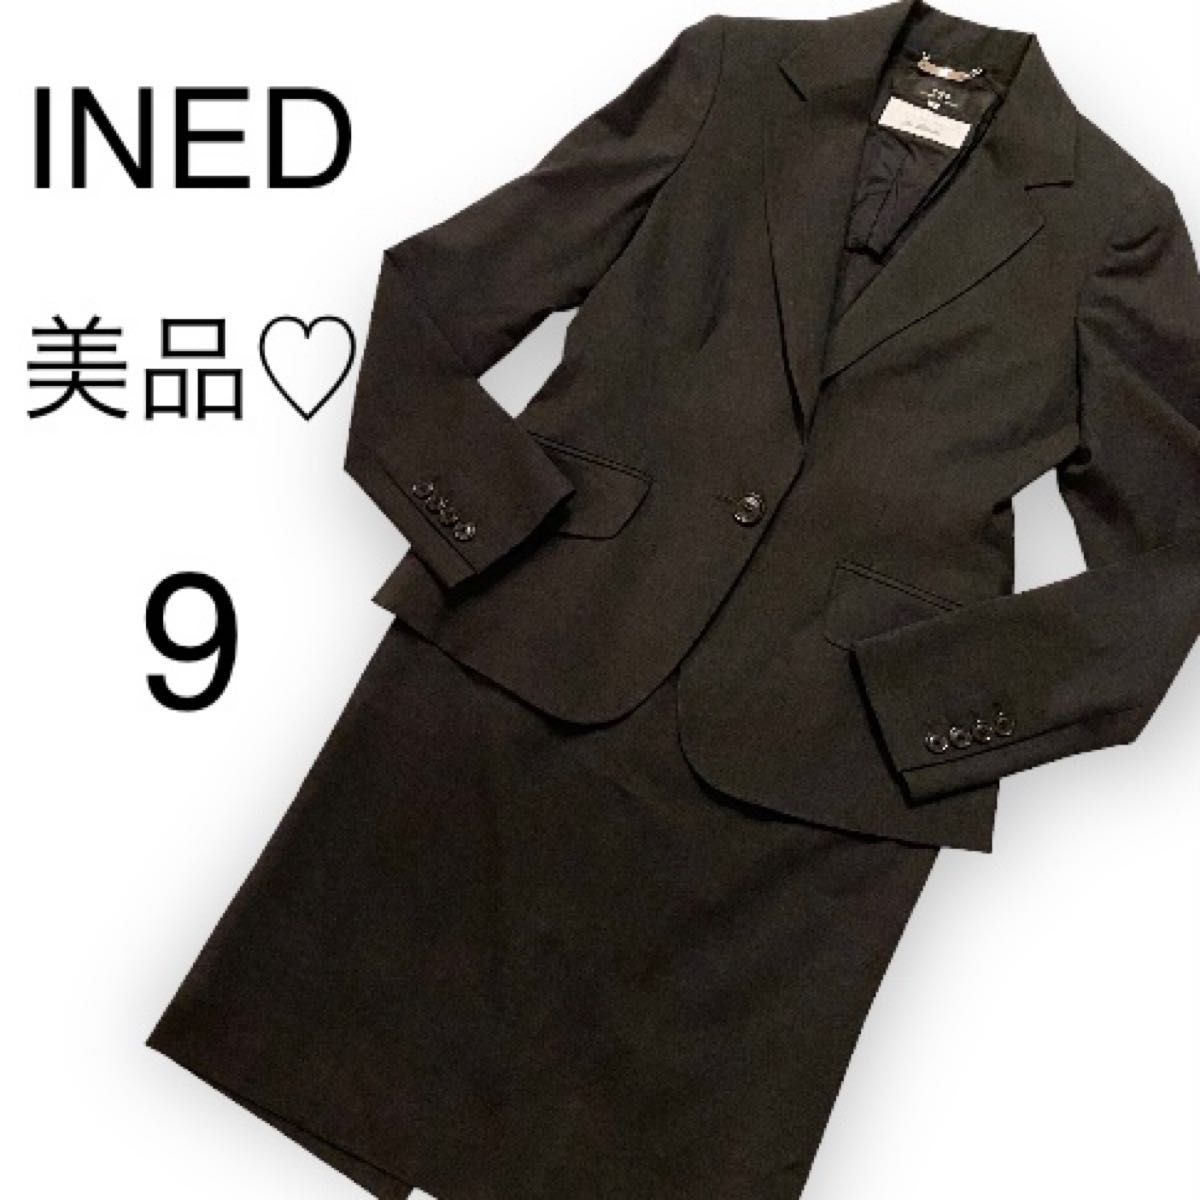 美品 INED イネド フォーマル スカートスーツ 上下セット セットアップ